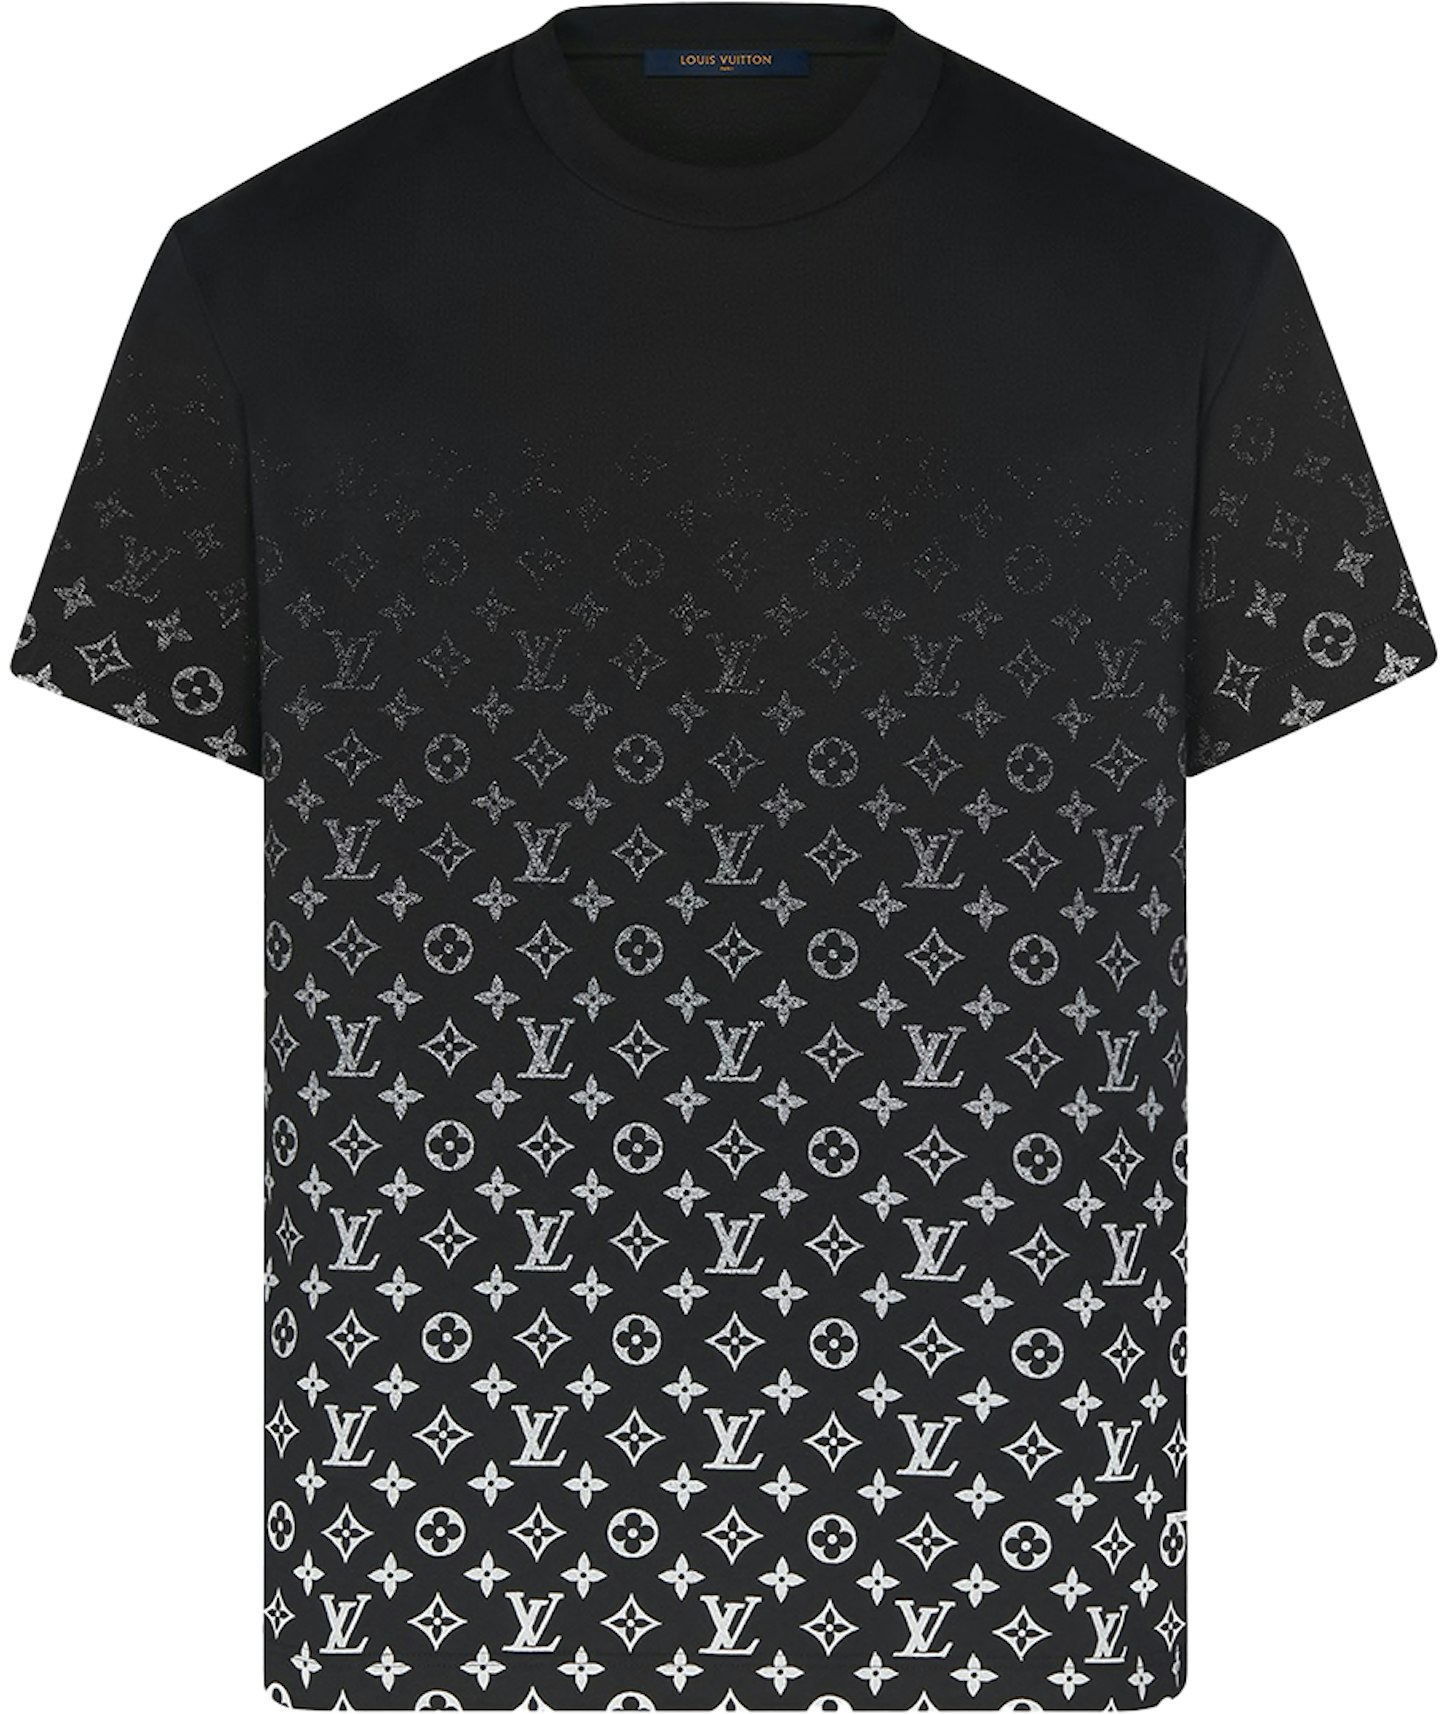 Vuitton LVSE Gradient T-Shirt Black/White Men's - US